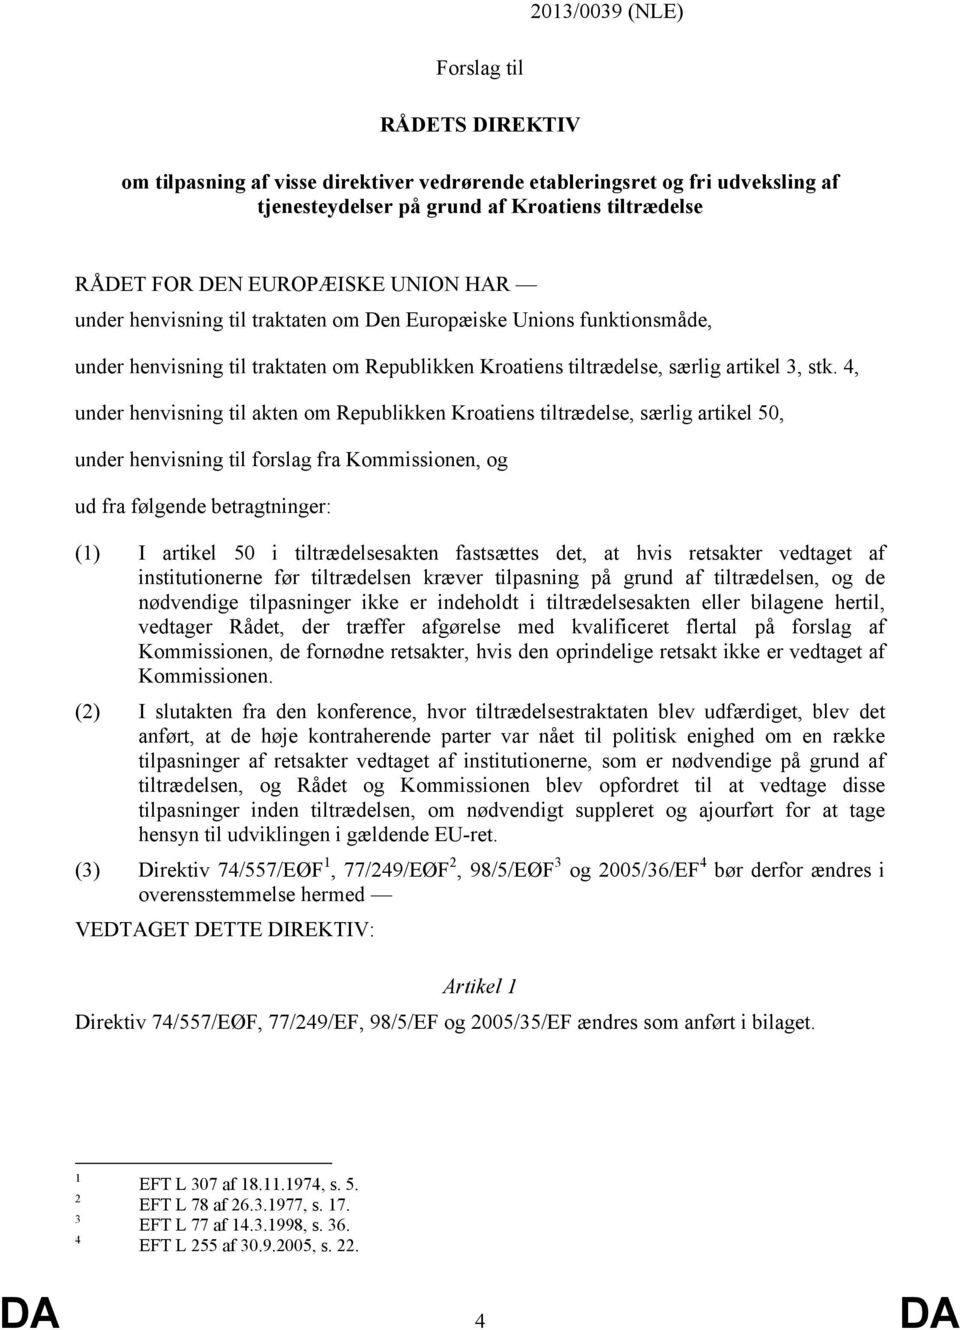 4, under henvisning til akten om Republikken Kroatiens tiltrædelse, særlig artikel 50, under henvisning til forslag fra Kommissionen, og ud fra følgende betragtninger: (1) I artikel 50 i